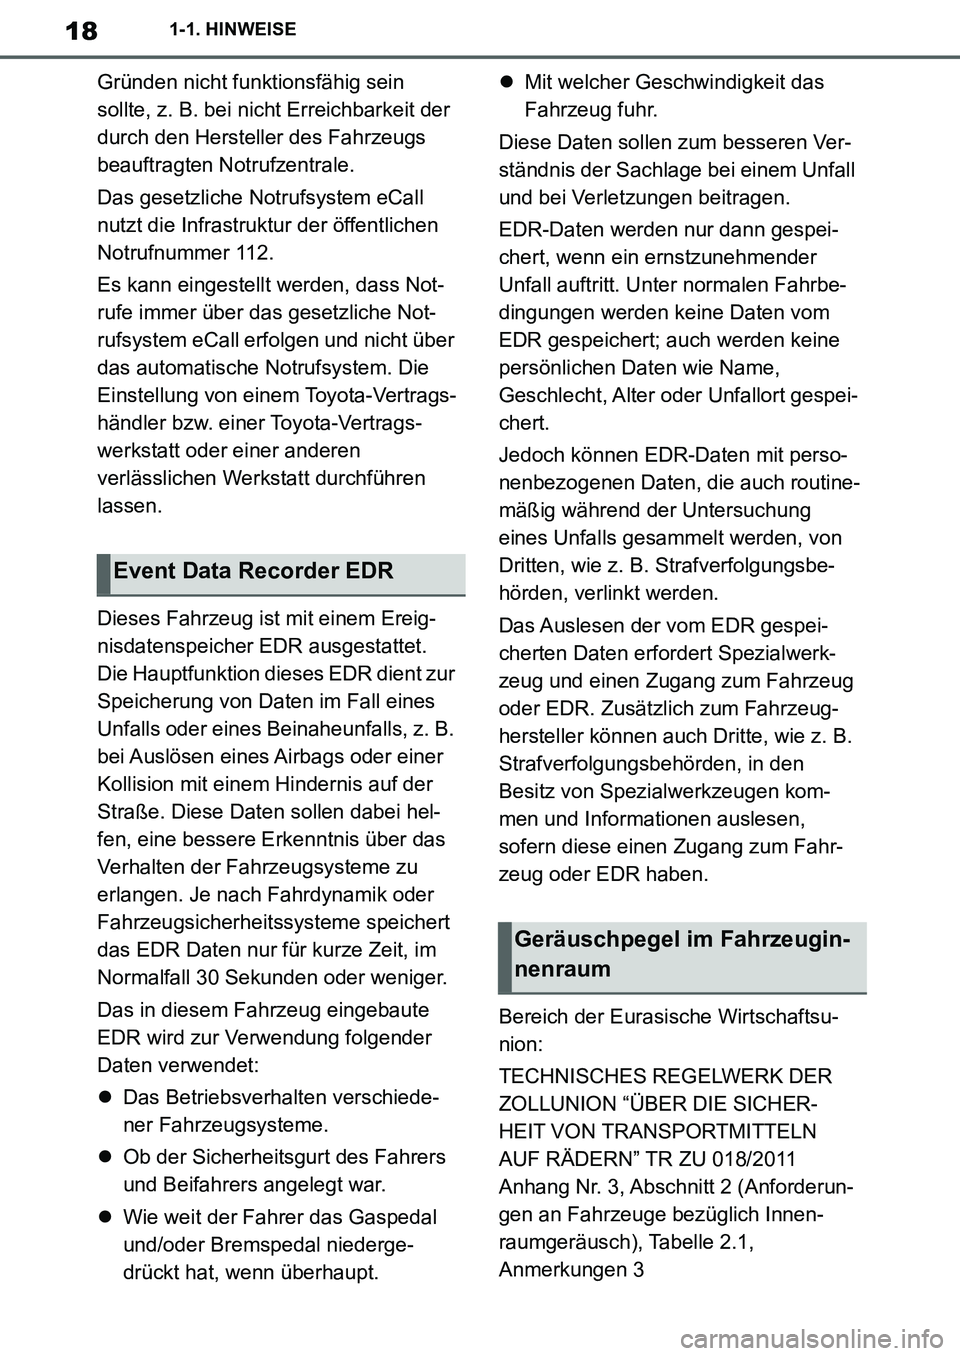 TOYOTA SUPRA 2020  Betriebsanleitungen (in German) 18
Supra Owners Manual_EM
1-1. HINWEISE
Gründen nicht funktionsfähig sein 
sollte, z. B. bei nicht Erreichbarkeit der 
durch den Hersteller des Fahrzeugs 
beauftragten Notrufzentrale.
Das gesetzlic